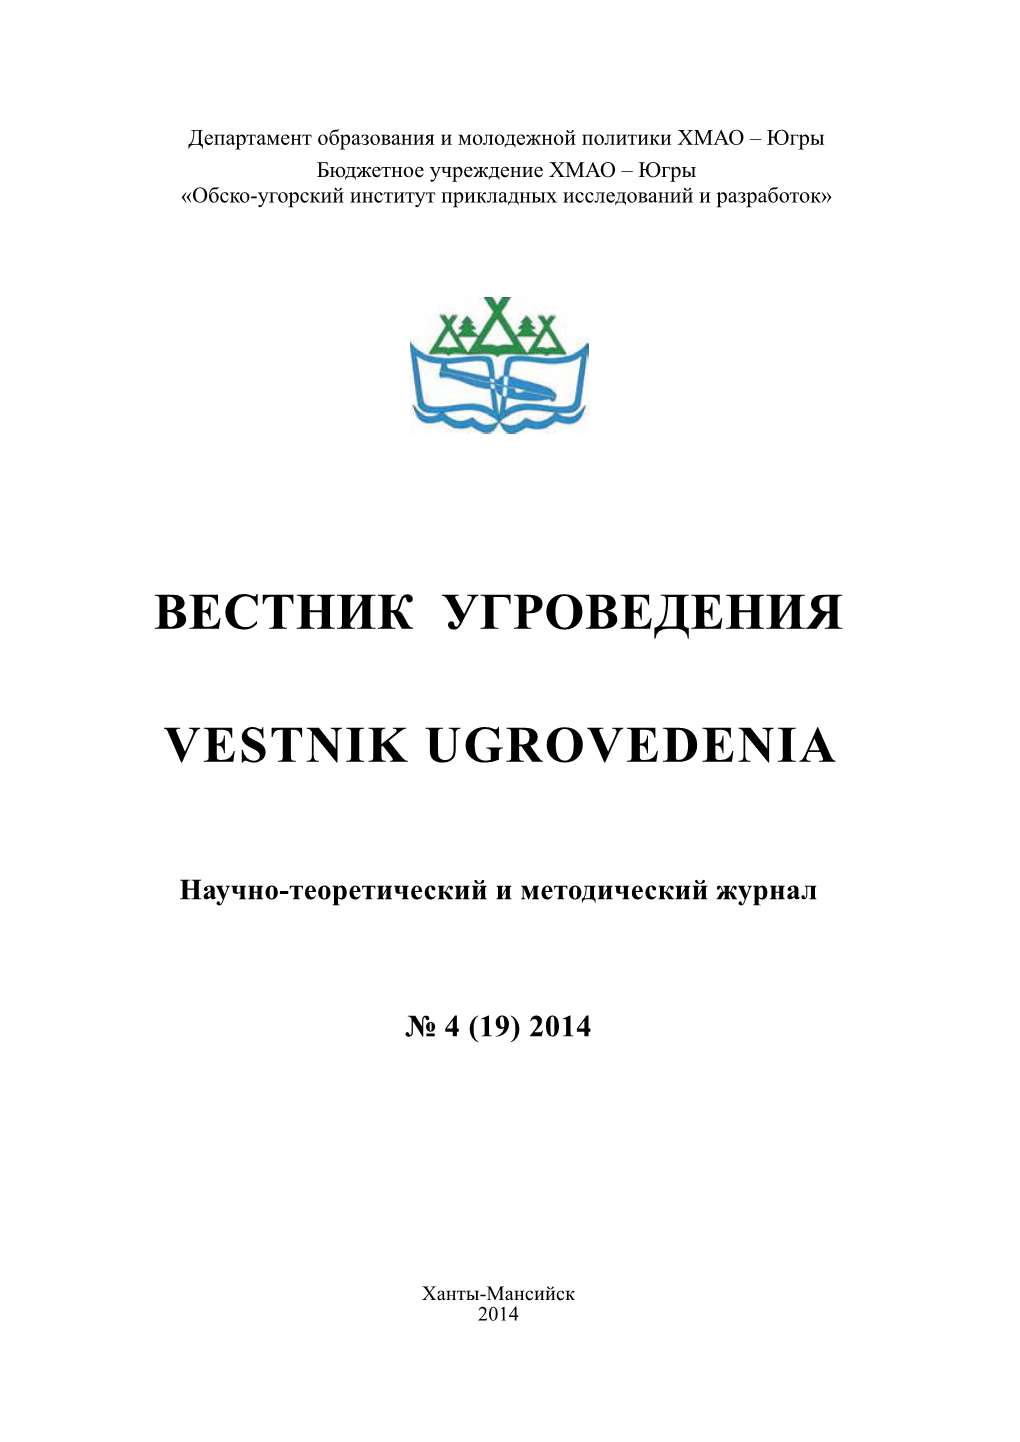 Вестник Угроведения Vestnik Ugrovedenia